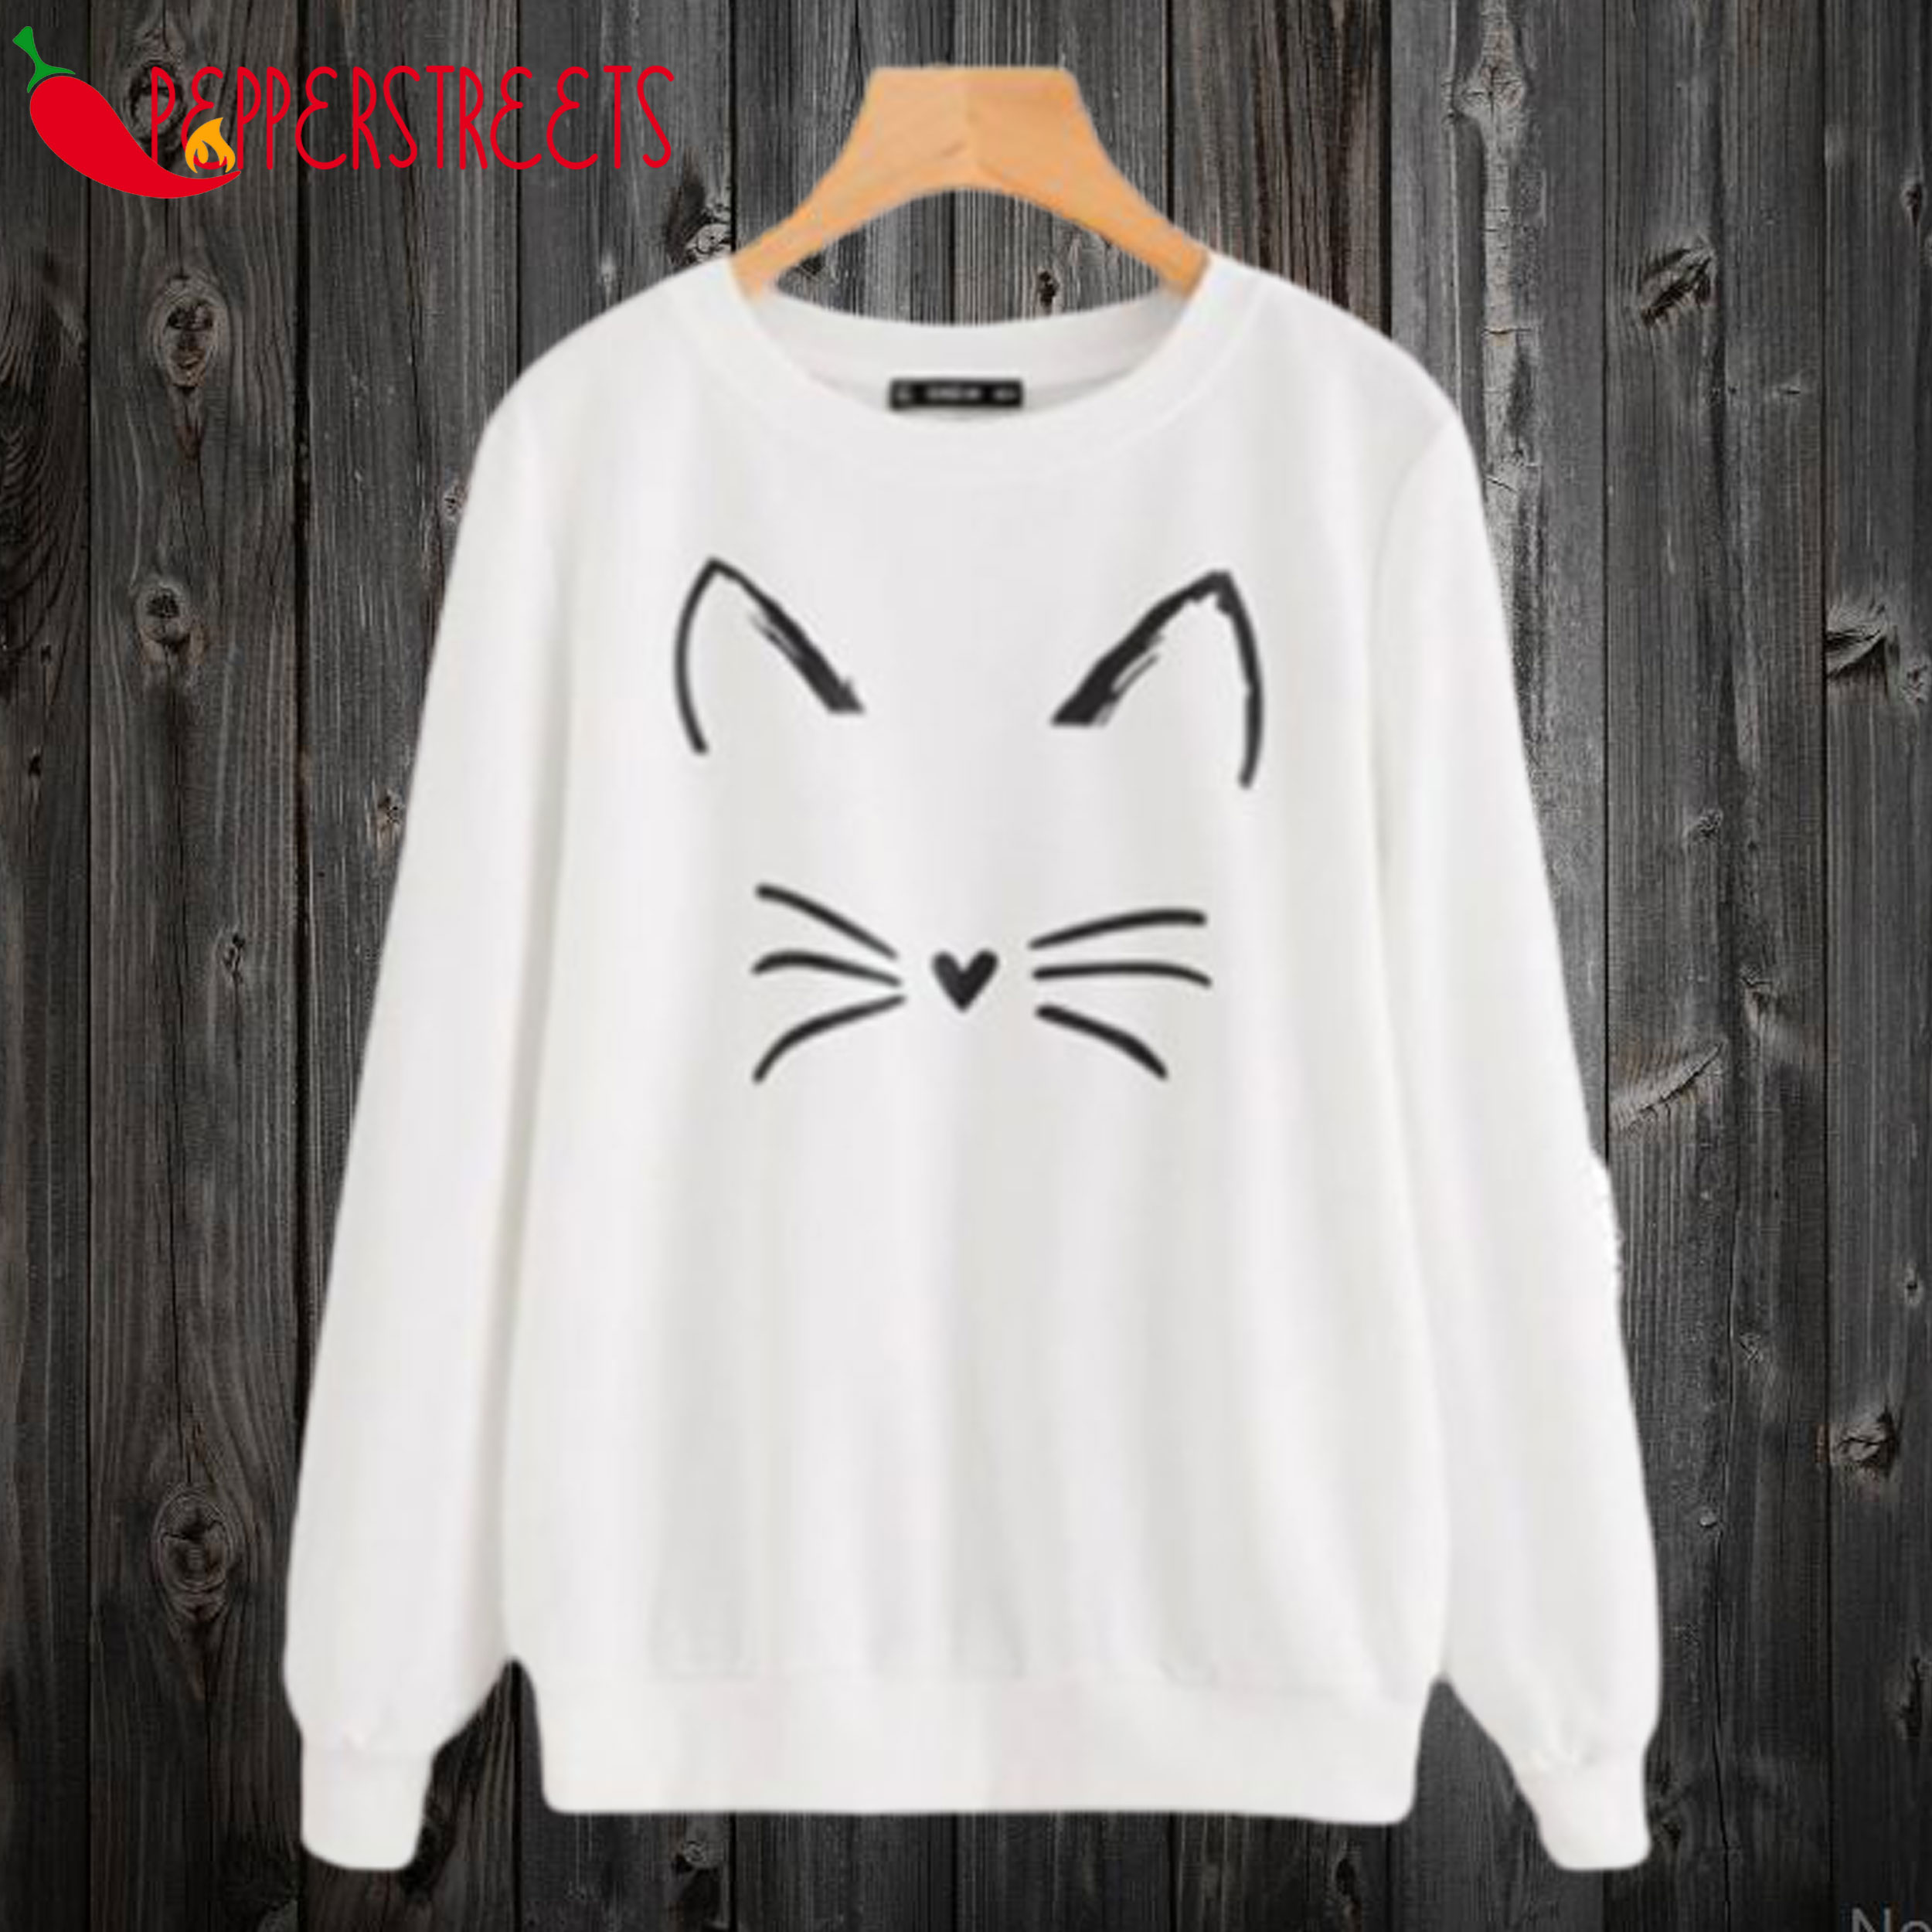 Cute Cat Face Sweatshirt